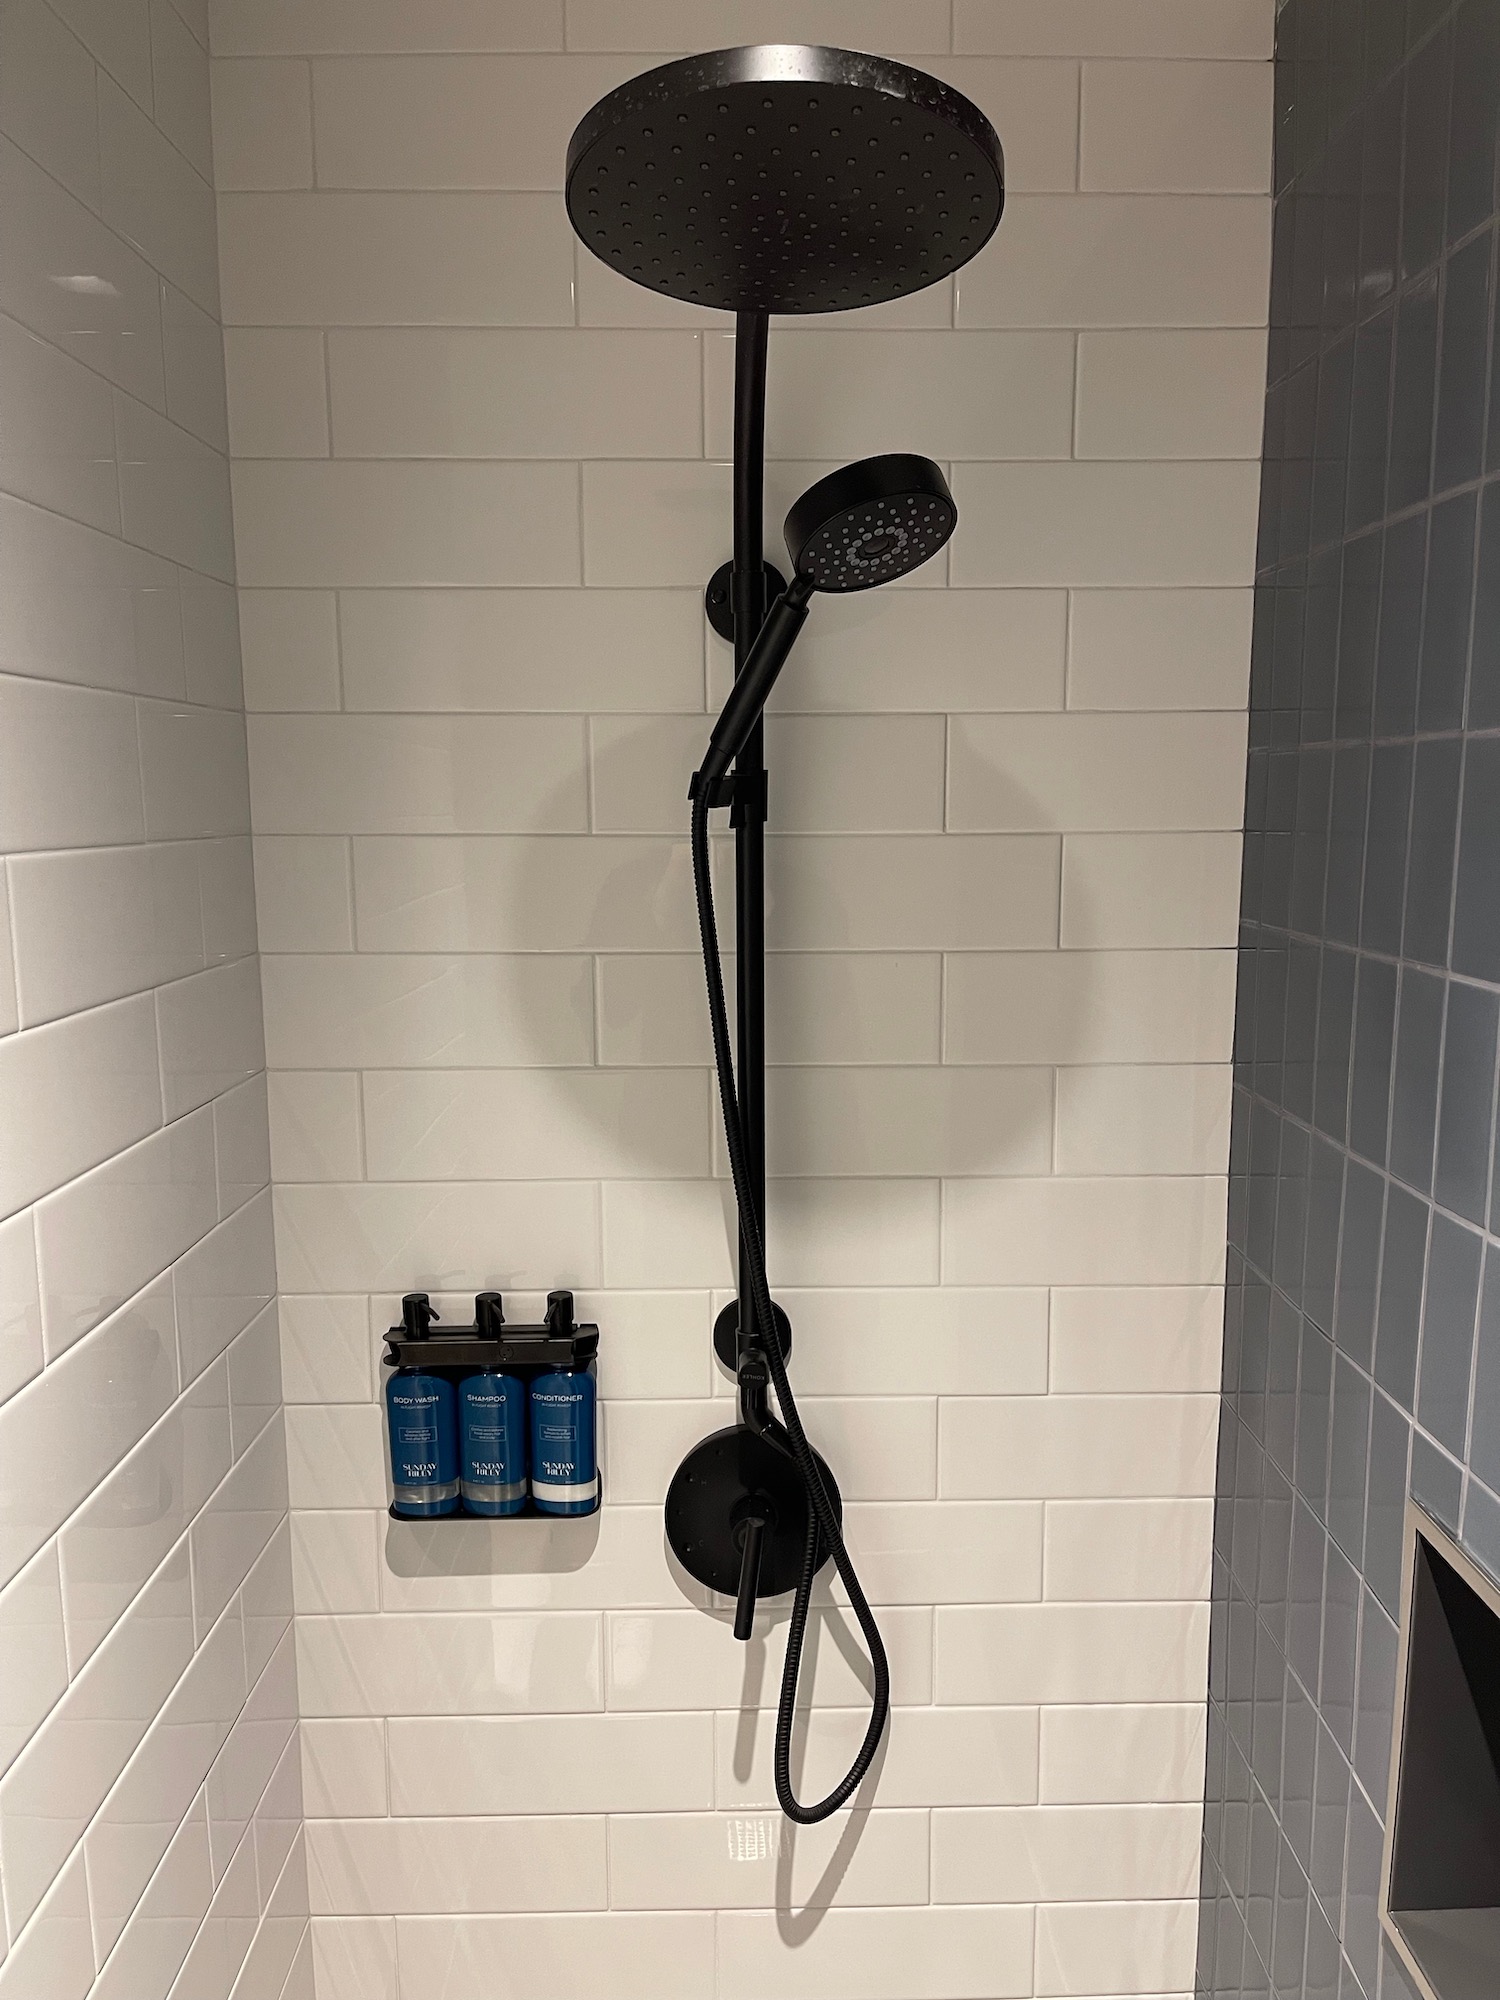 a shower head with a shower head and a shower head